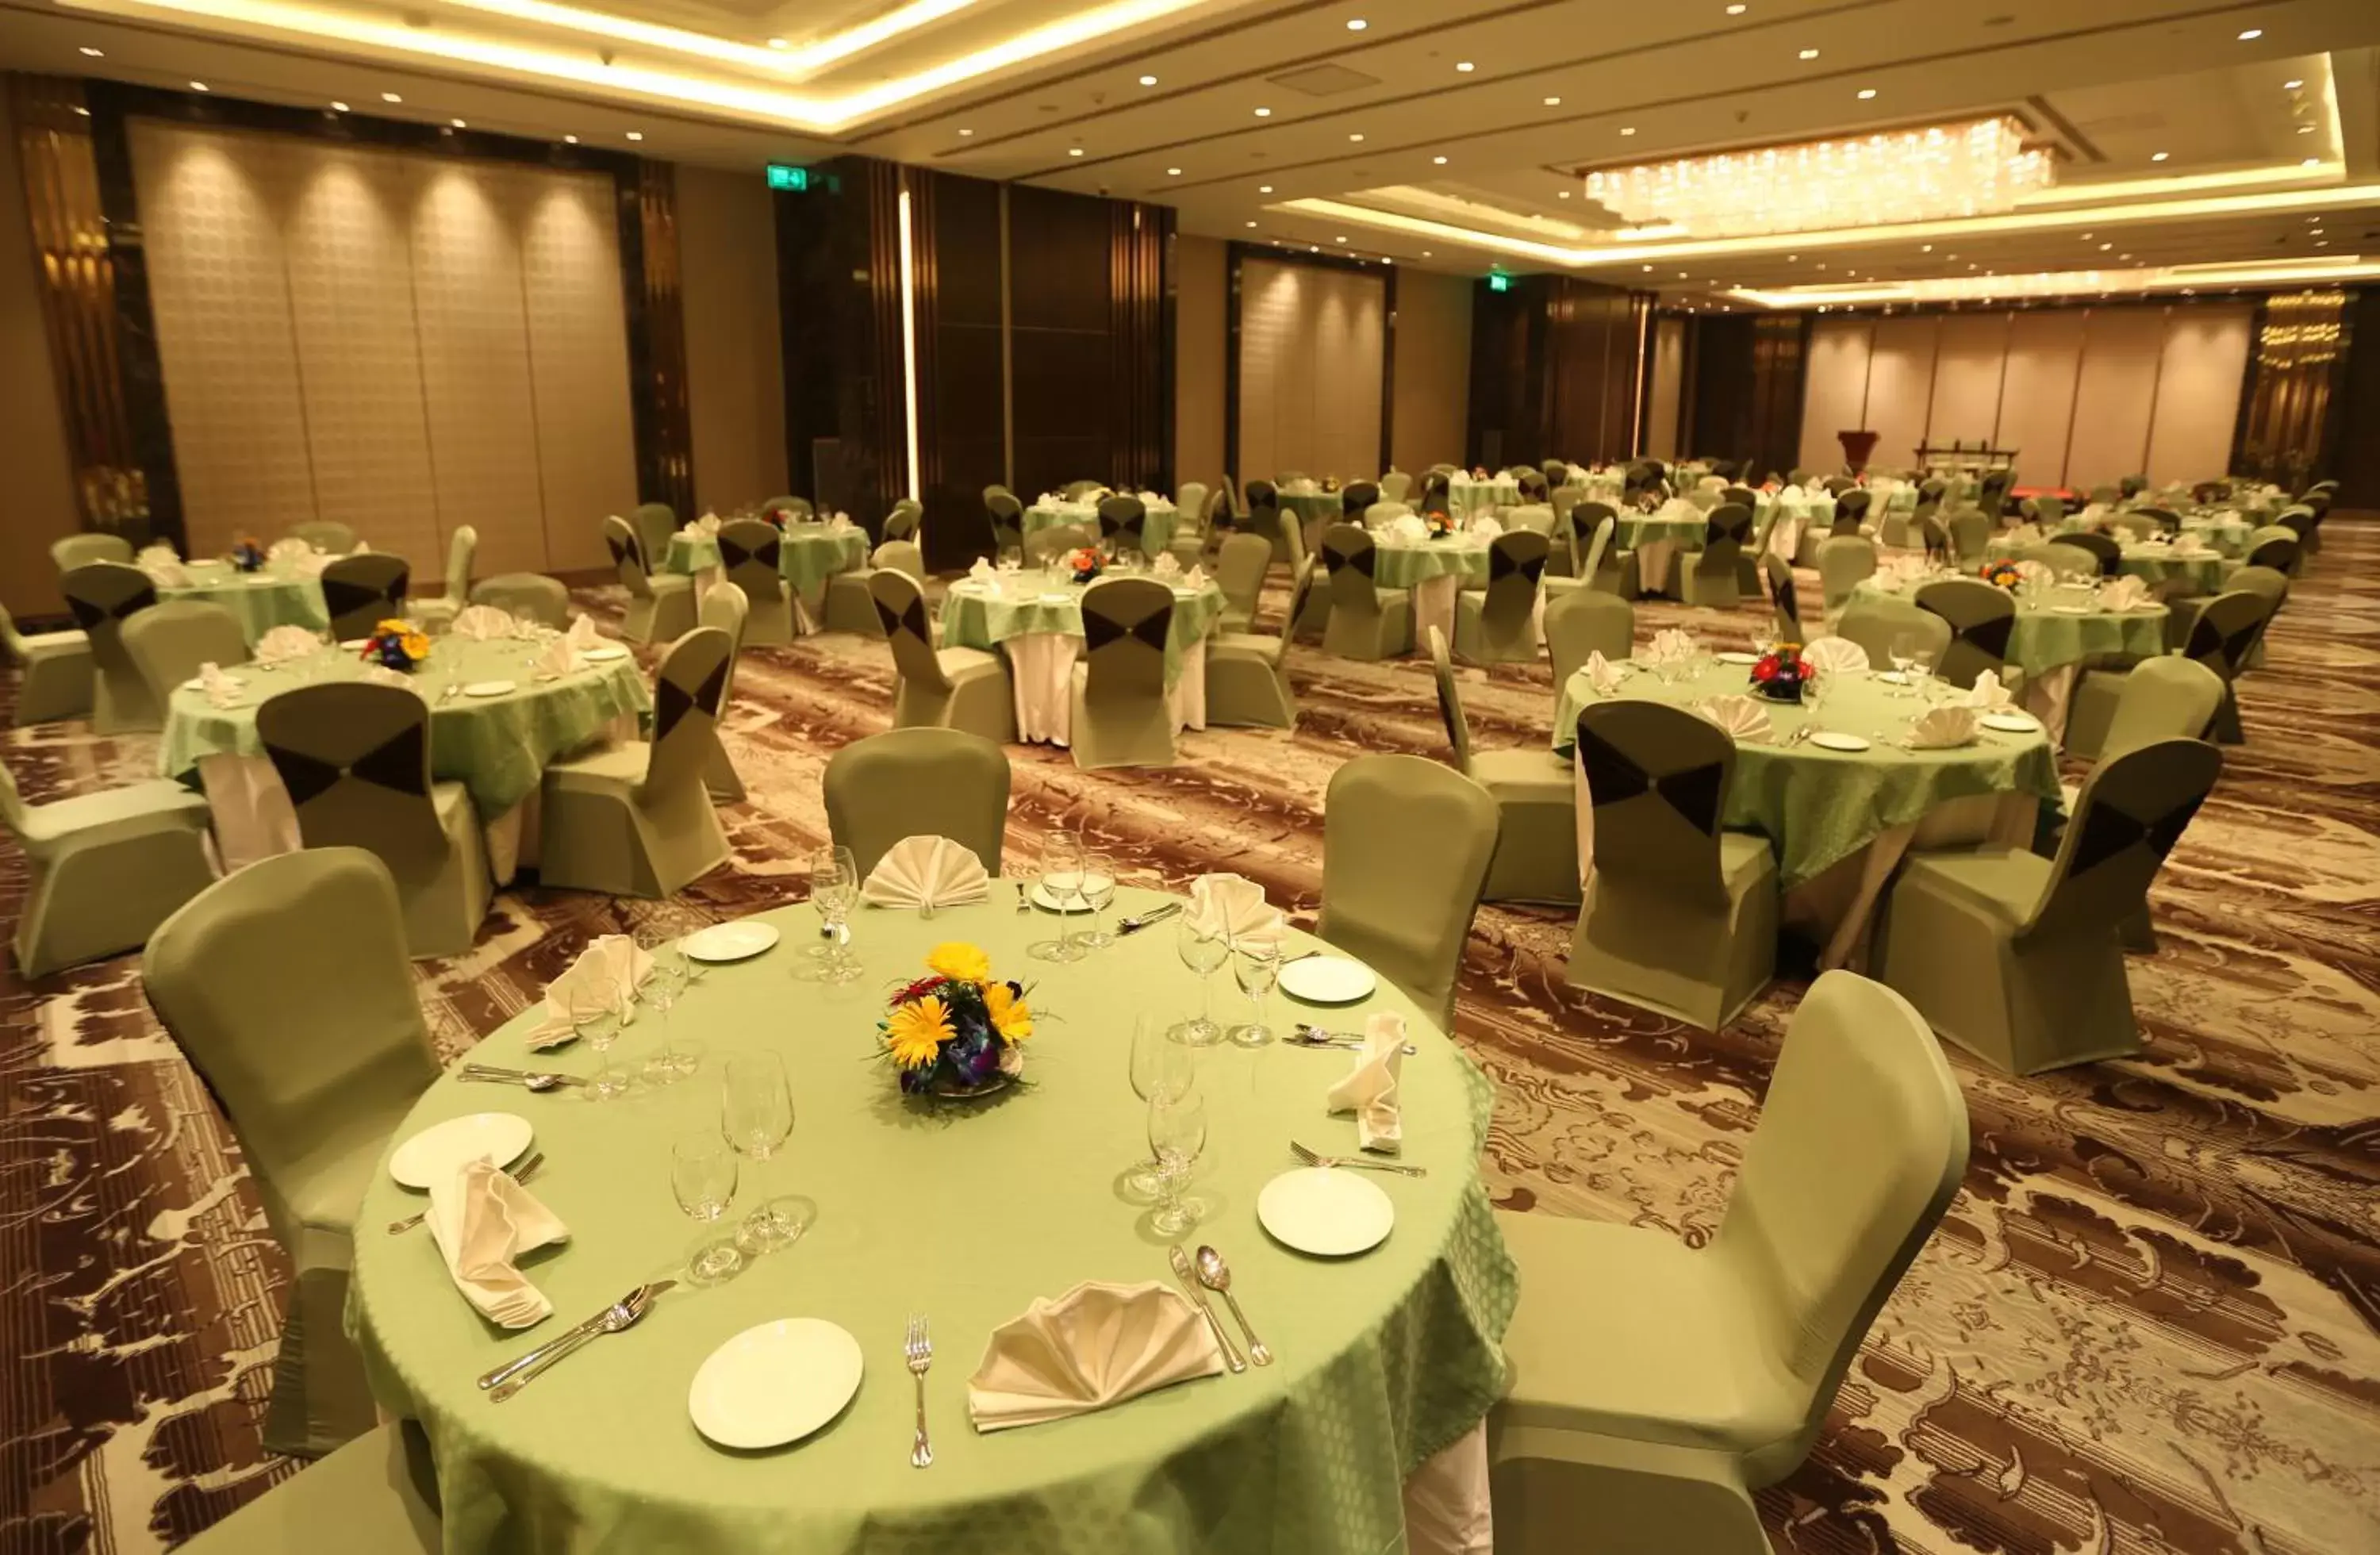 Banquet/Function facilities, Banquet Facilities in Pride Plaza Hotel, Aerocity New Delhi